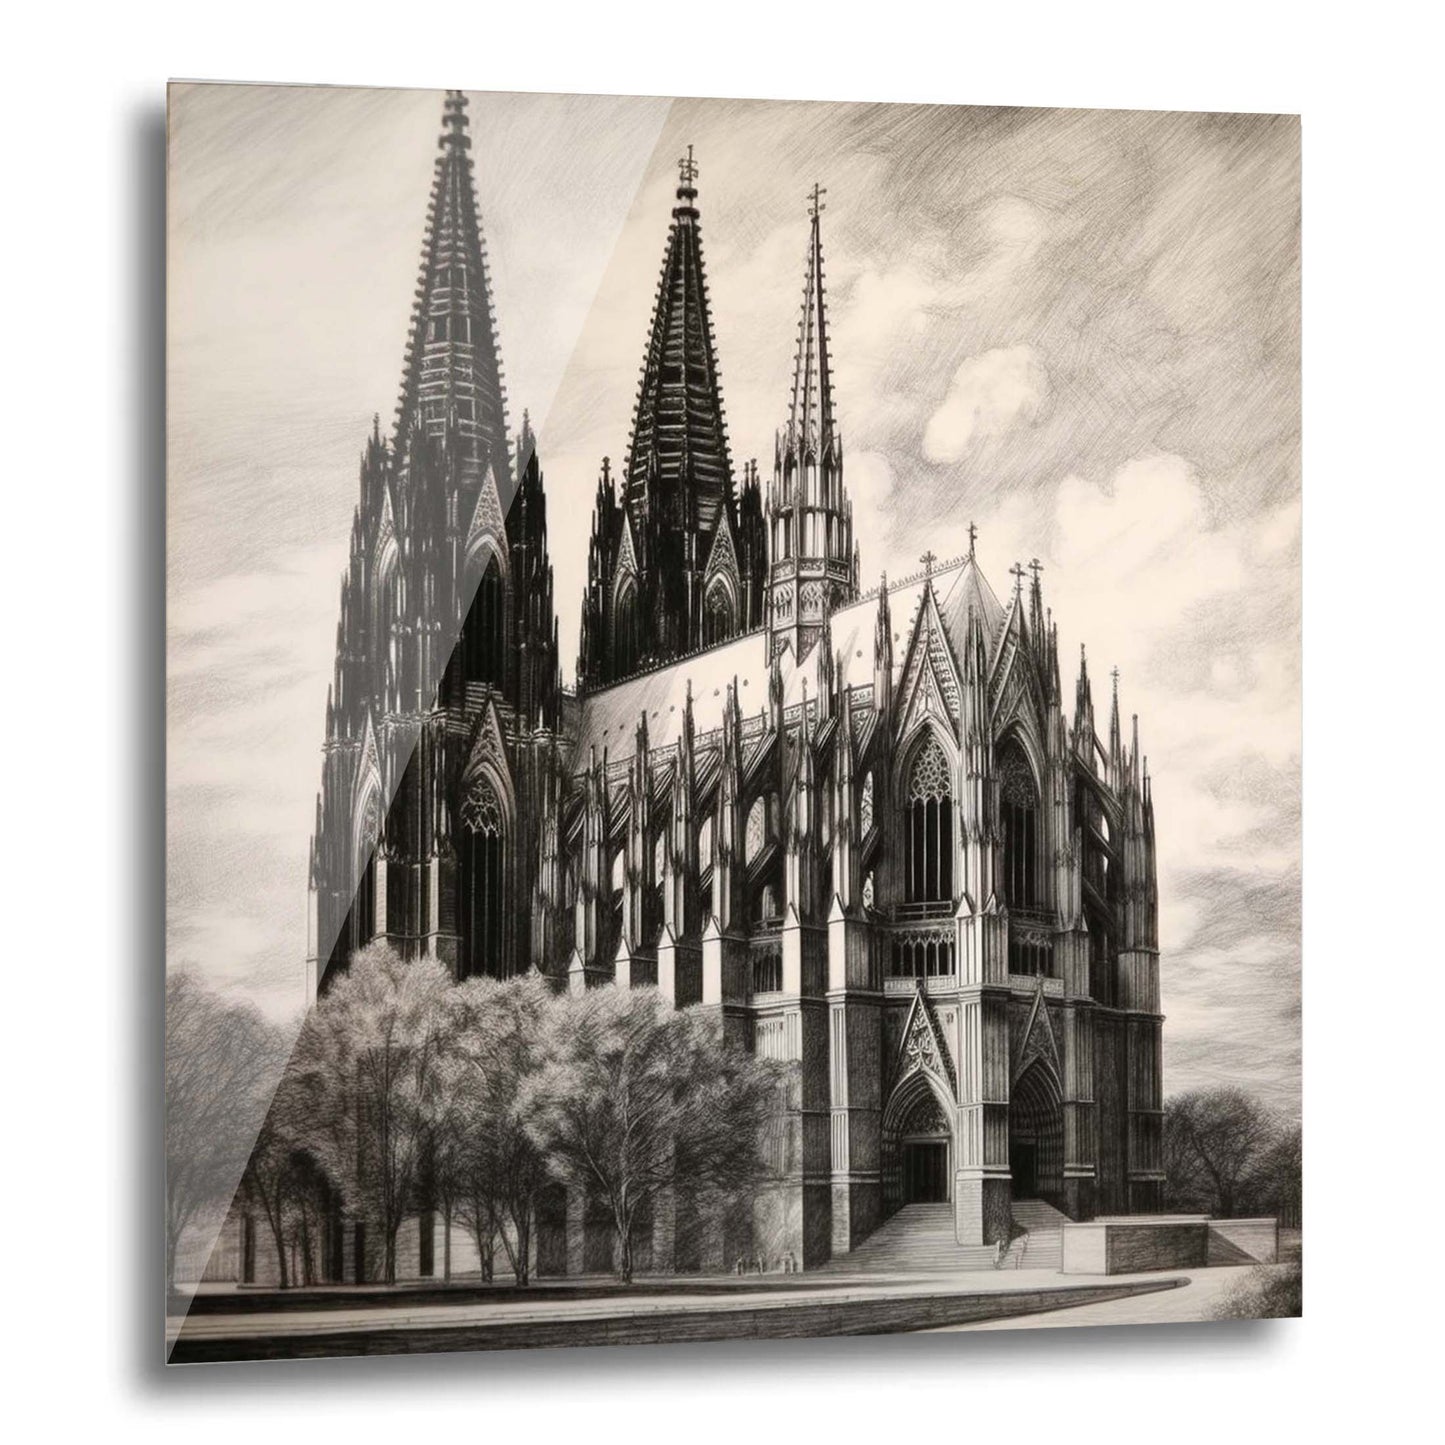 Kölner Dom - Wandbild in der Stilrichtung einer Zeichnung